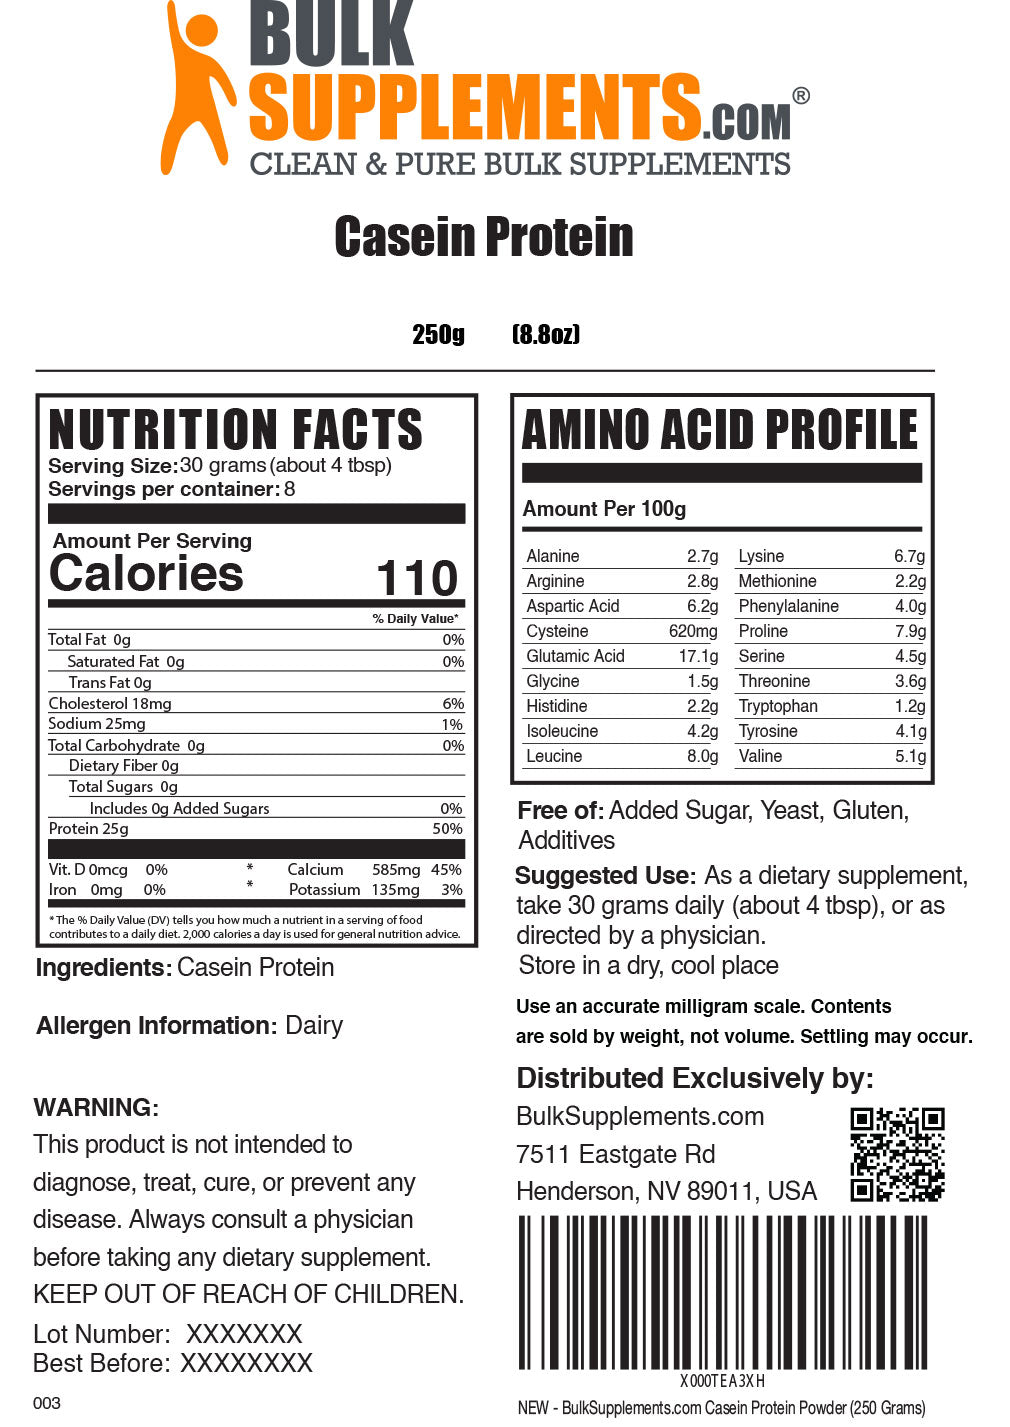 250g casein protein powder supplement facts label